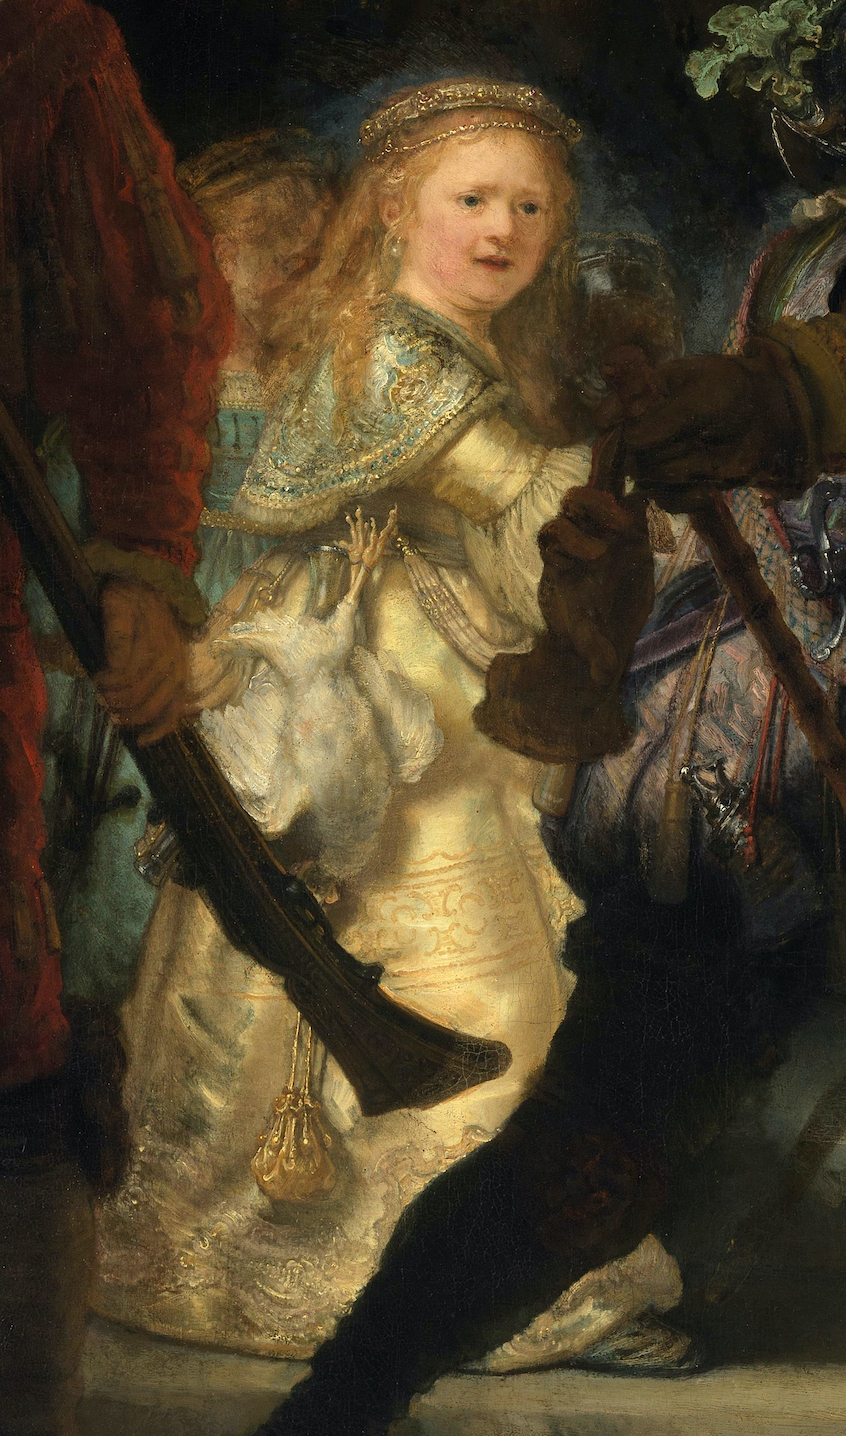 Golden girl (detail), Rembrandt van Rijn, The Night Watch, 1642, oil on canvas, 379.5 x 453.5 cm (Rijksmuseum, Amsterdam, Netherlands)